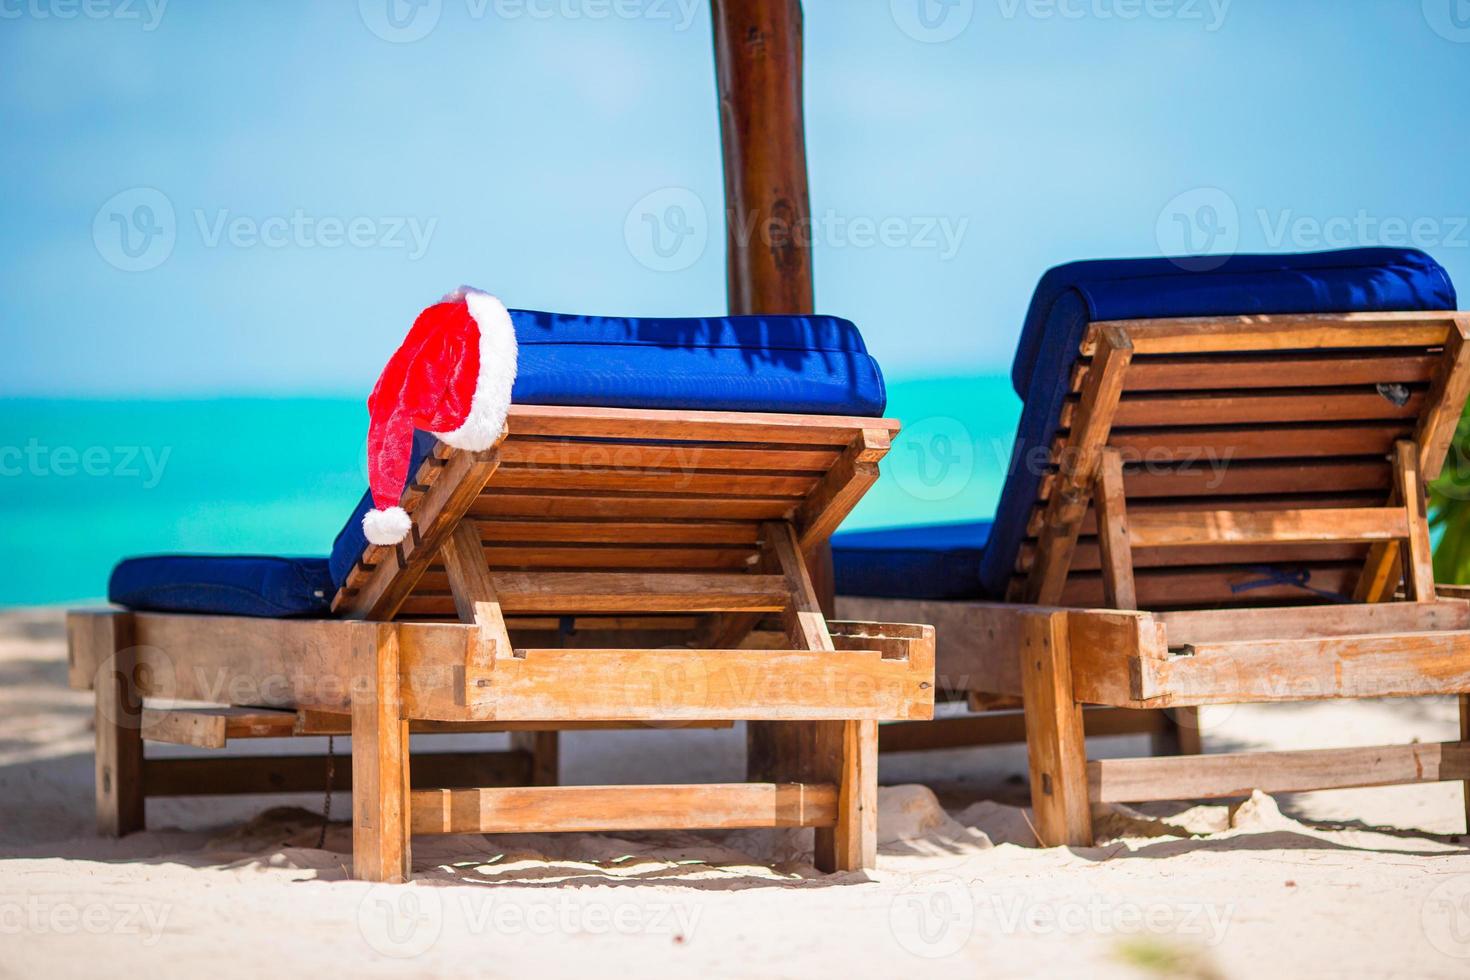 chapéu de papai noel na espreguiçadeira de praia com água do mar turquesa e areia branca. conceito de férias de natal foto